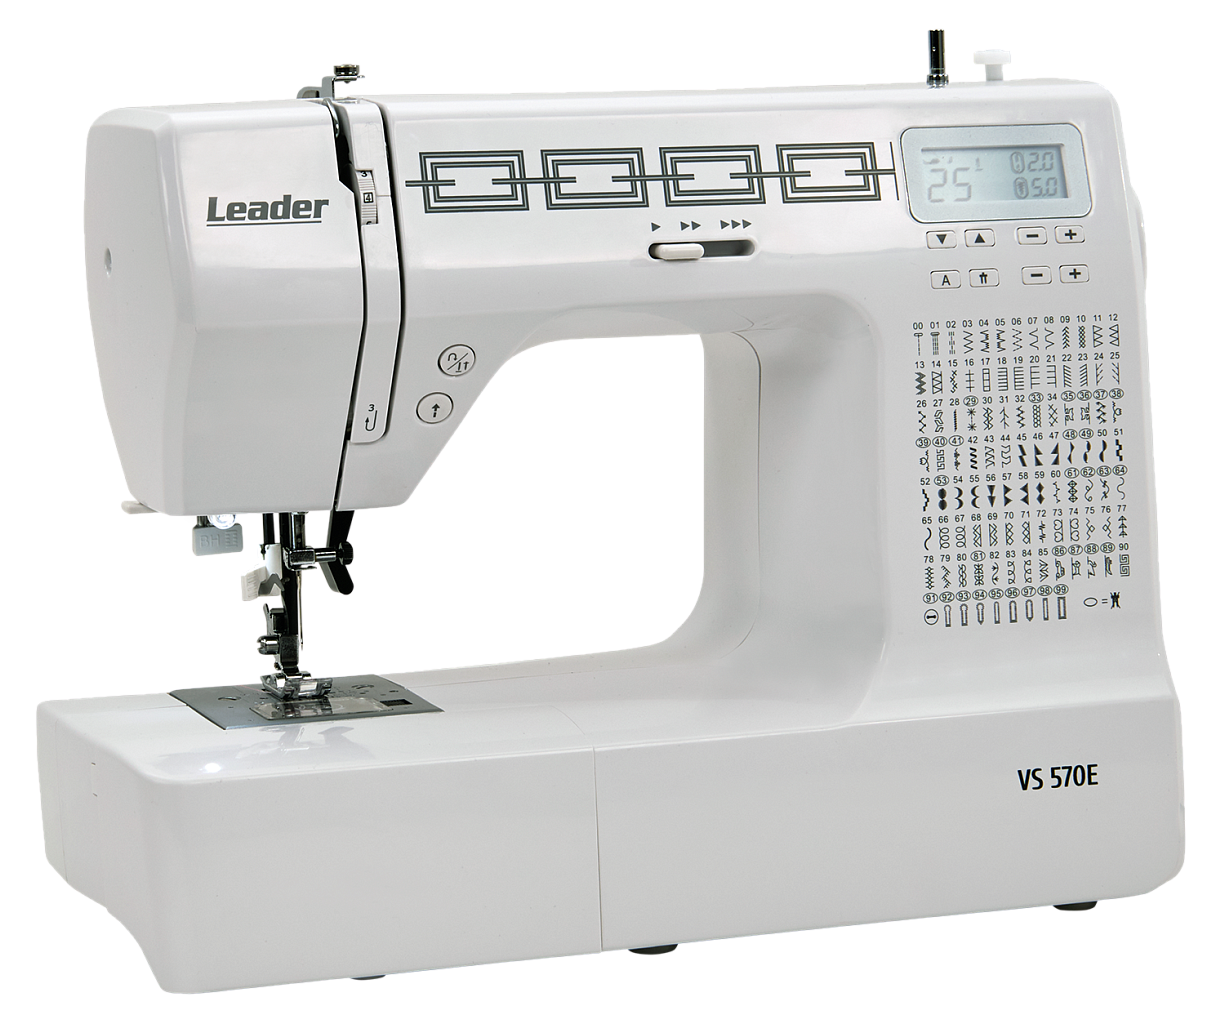 Leader VS 570E sewing machine